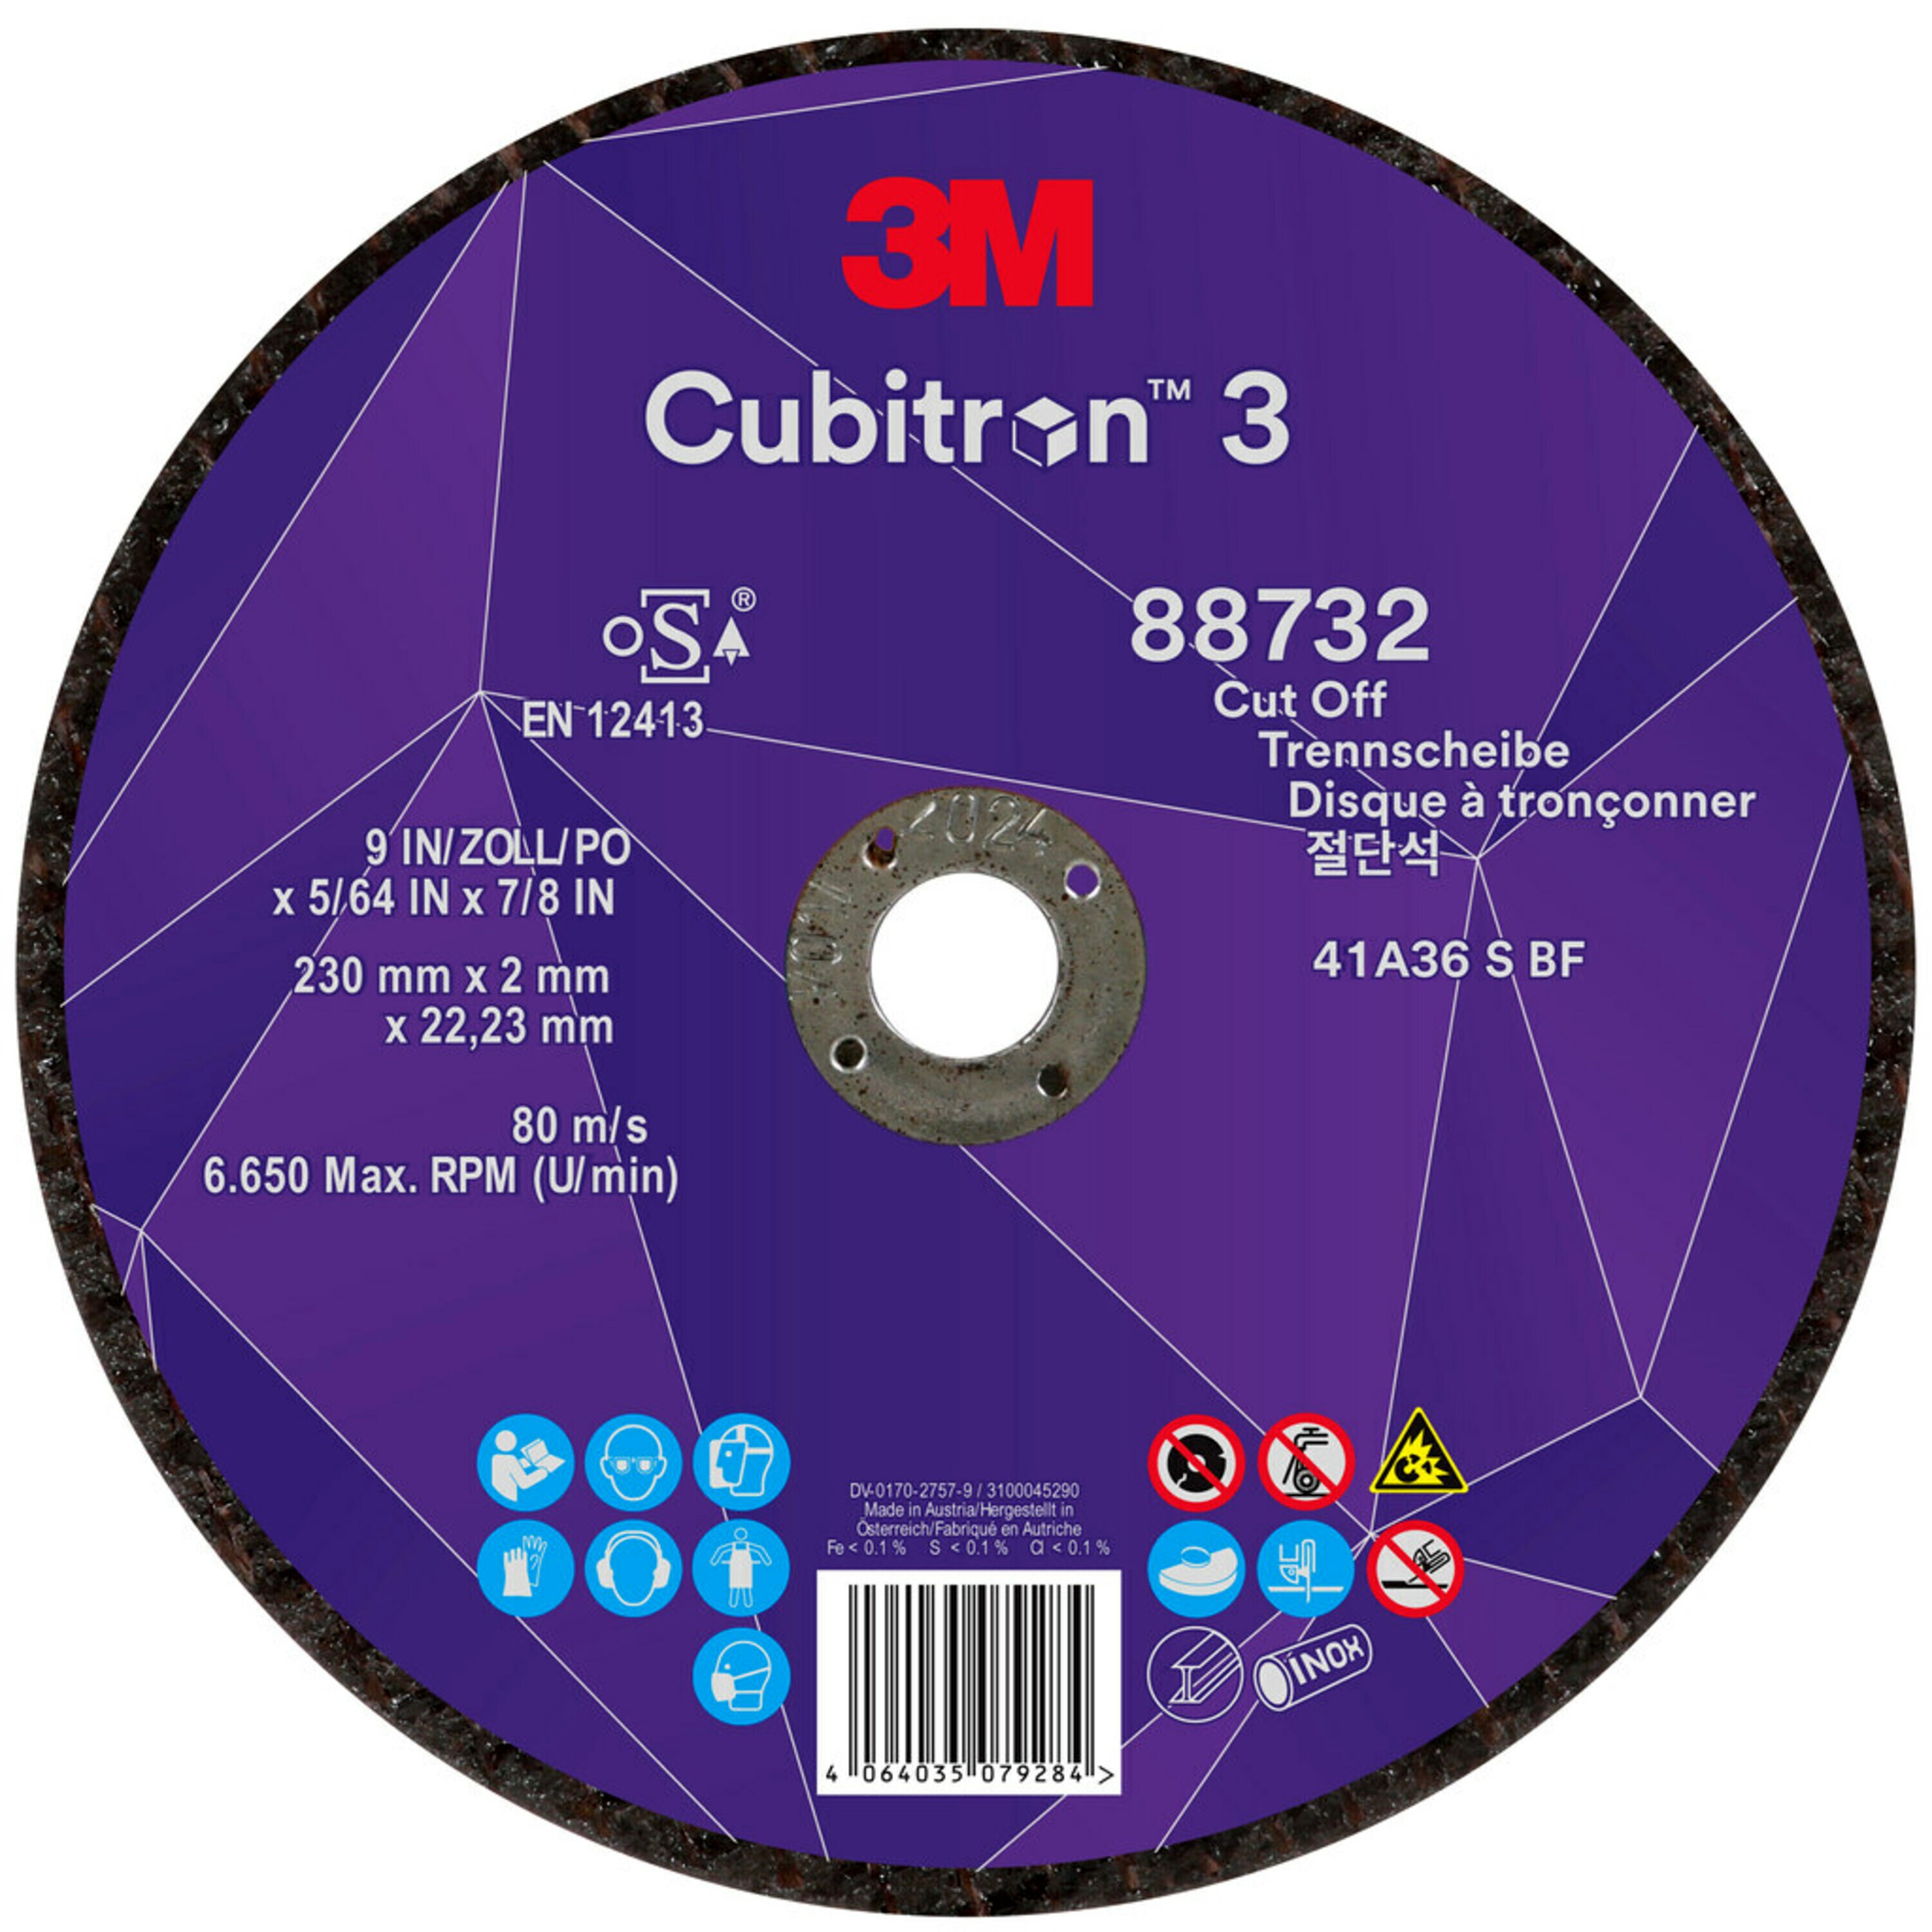 Disco de corte 3M Cubitron 3, 230 mm, 2 mm, 22,23 mm, 36+, tipo 41 #88732